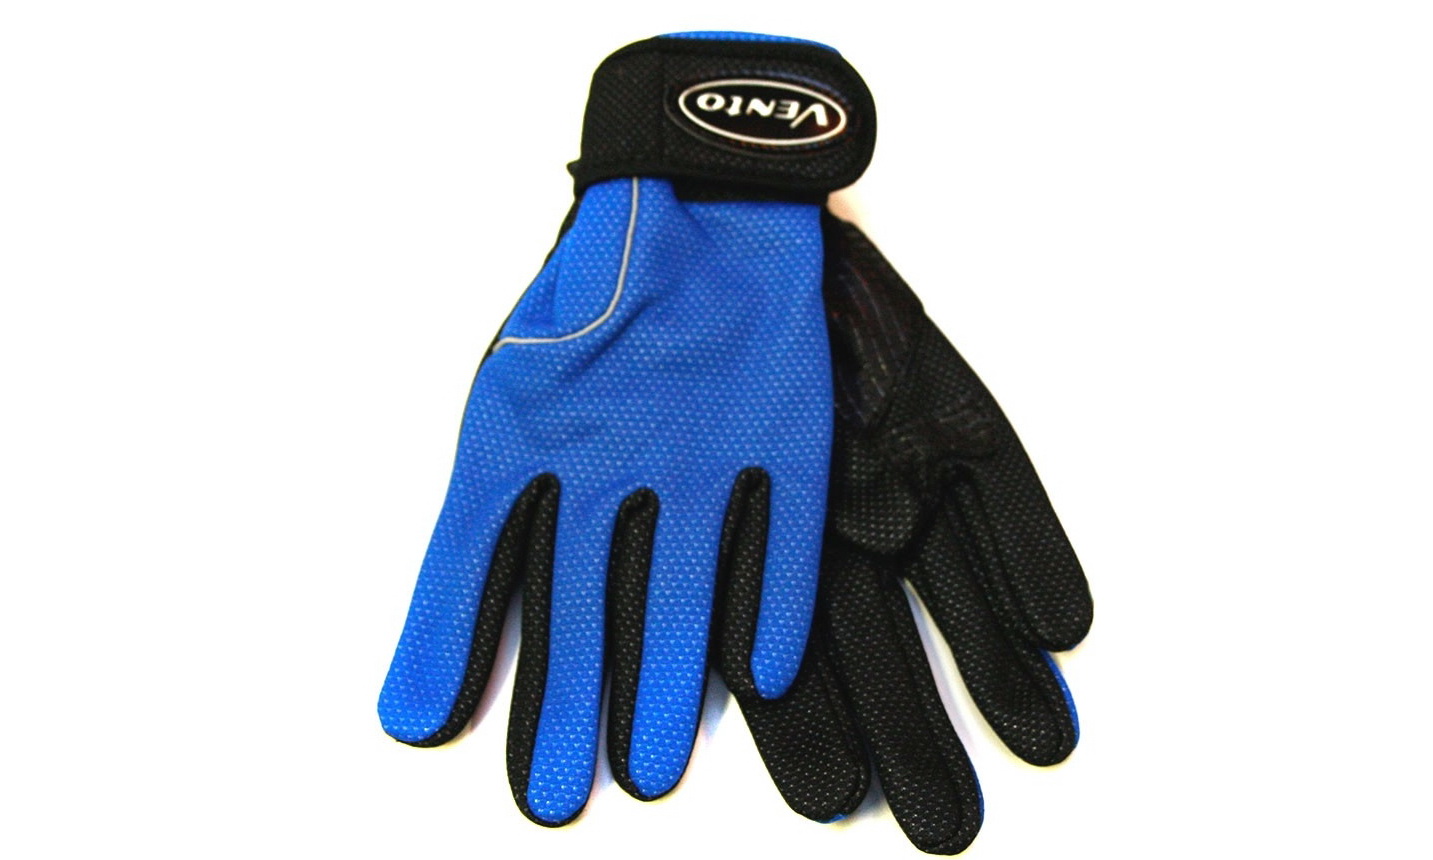 Перчатки с длинными пальцами Vento Wind & Waterproof (M)